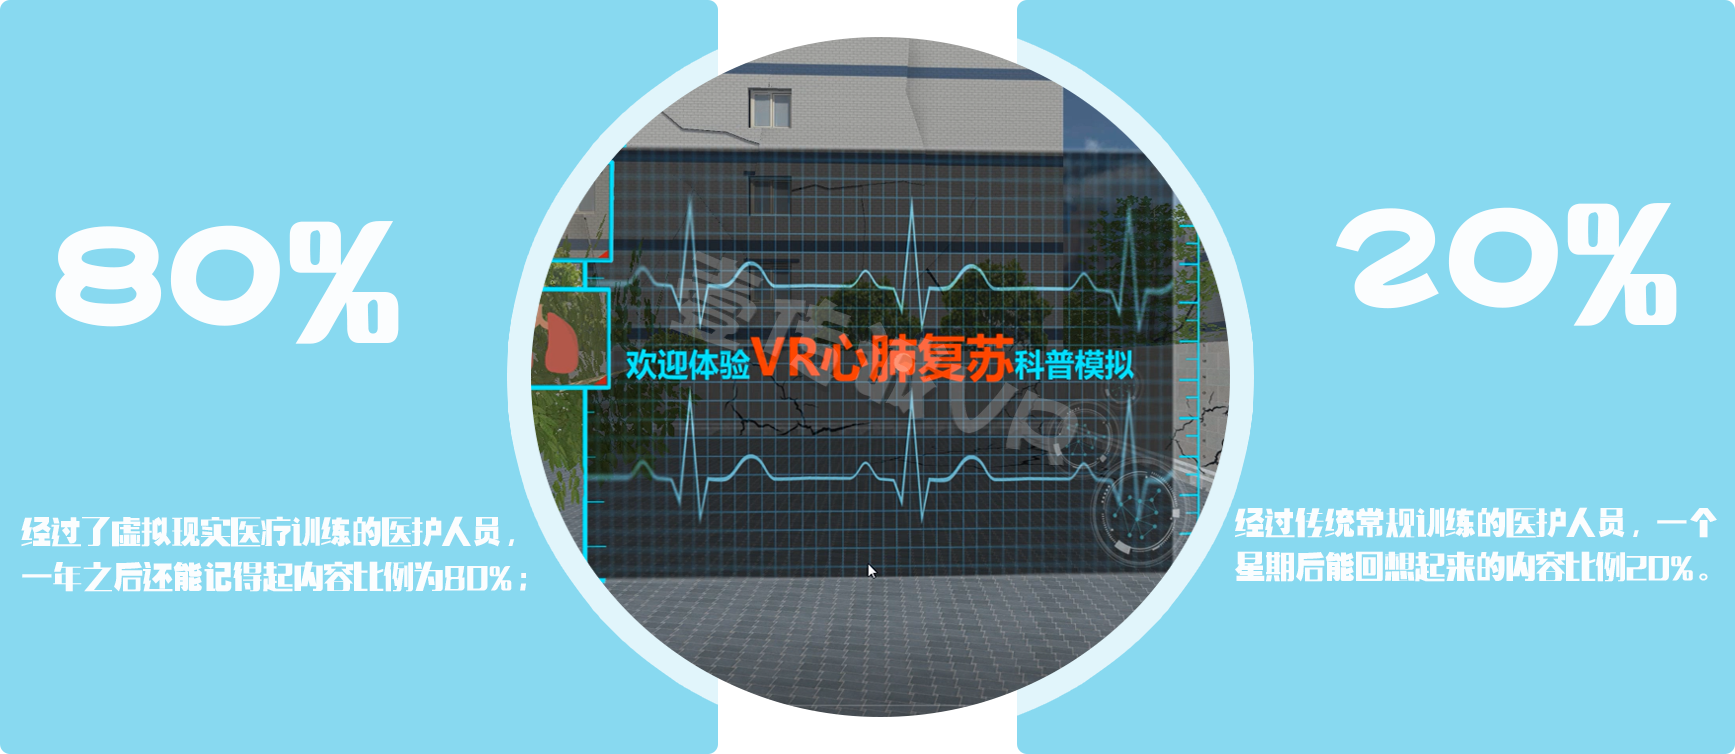 VR心肺复苏、VR外伤包扎、VR医学应用